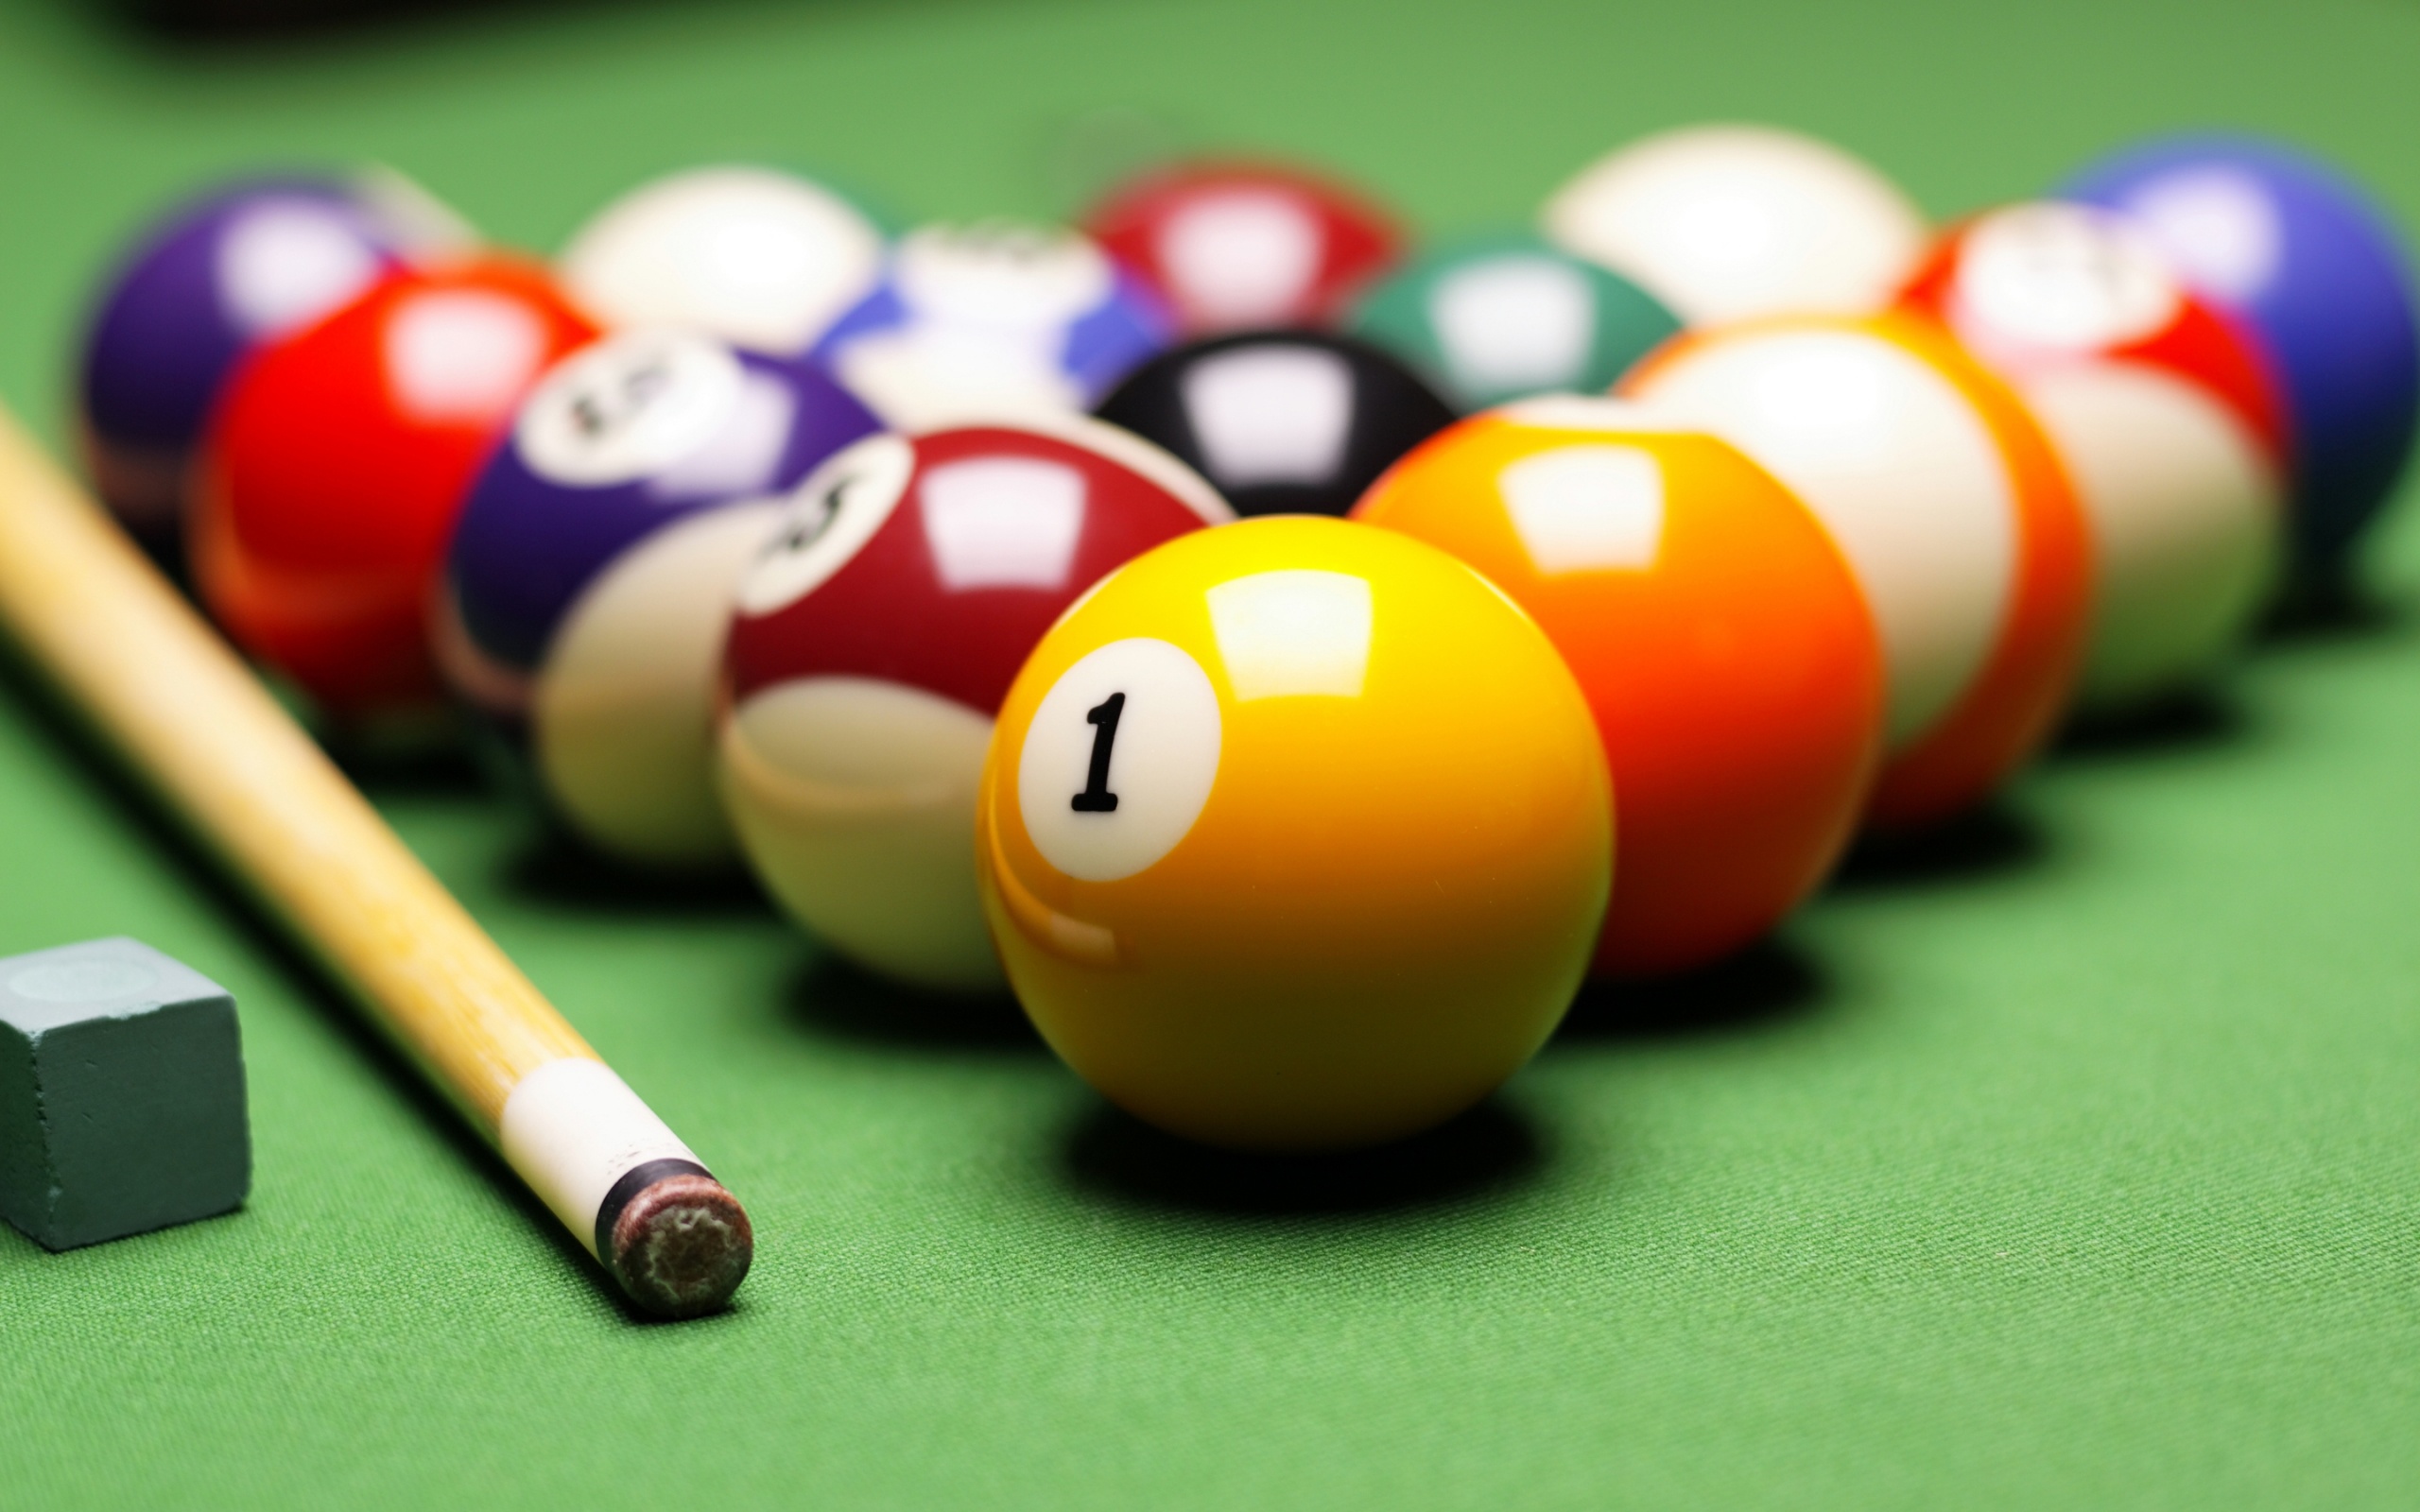 Billiards: Classic eight-ball, Seven solid-colored balls, seven striped balls, and the black 8 ball, Cue stick. 2560x1600 HD Wallpaper.